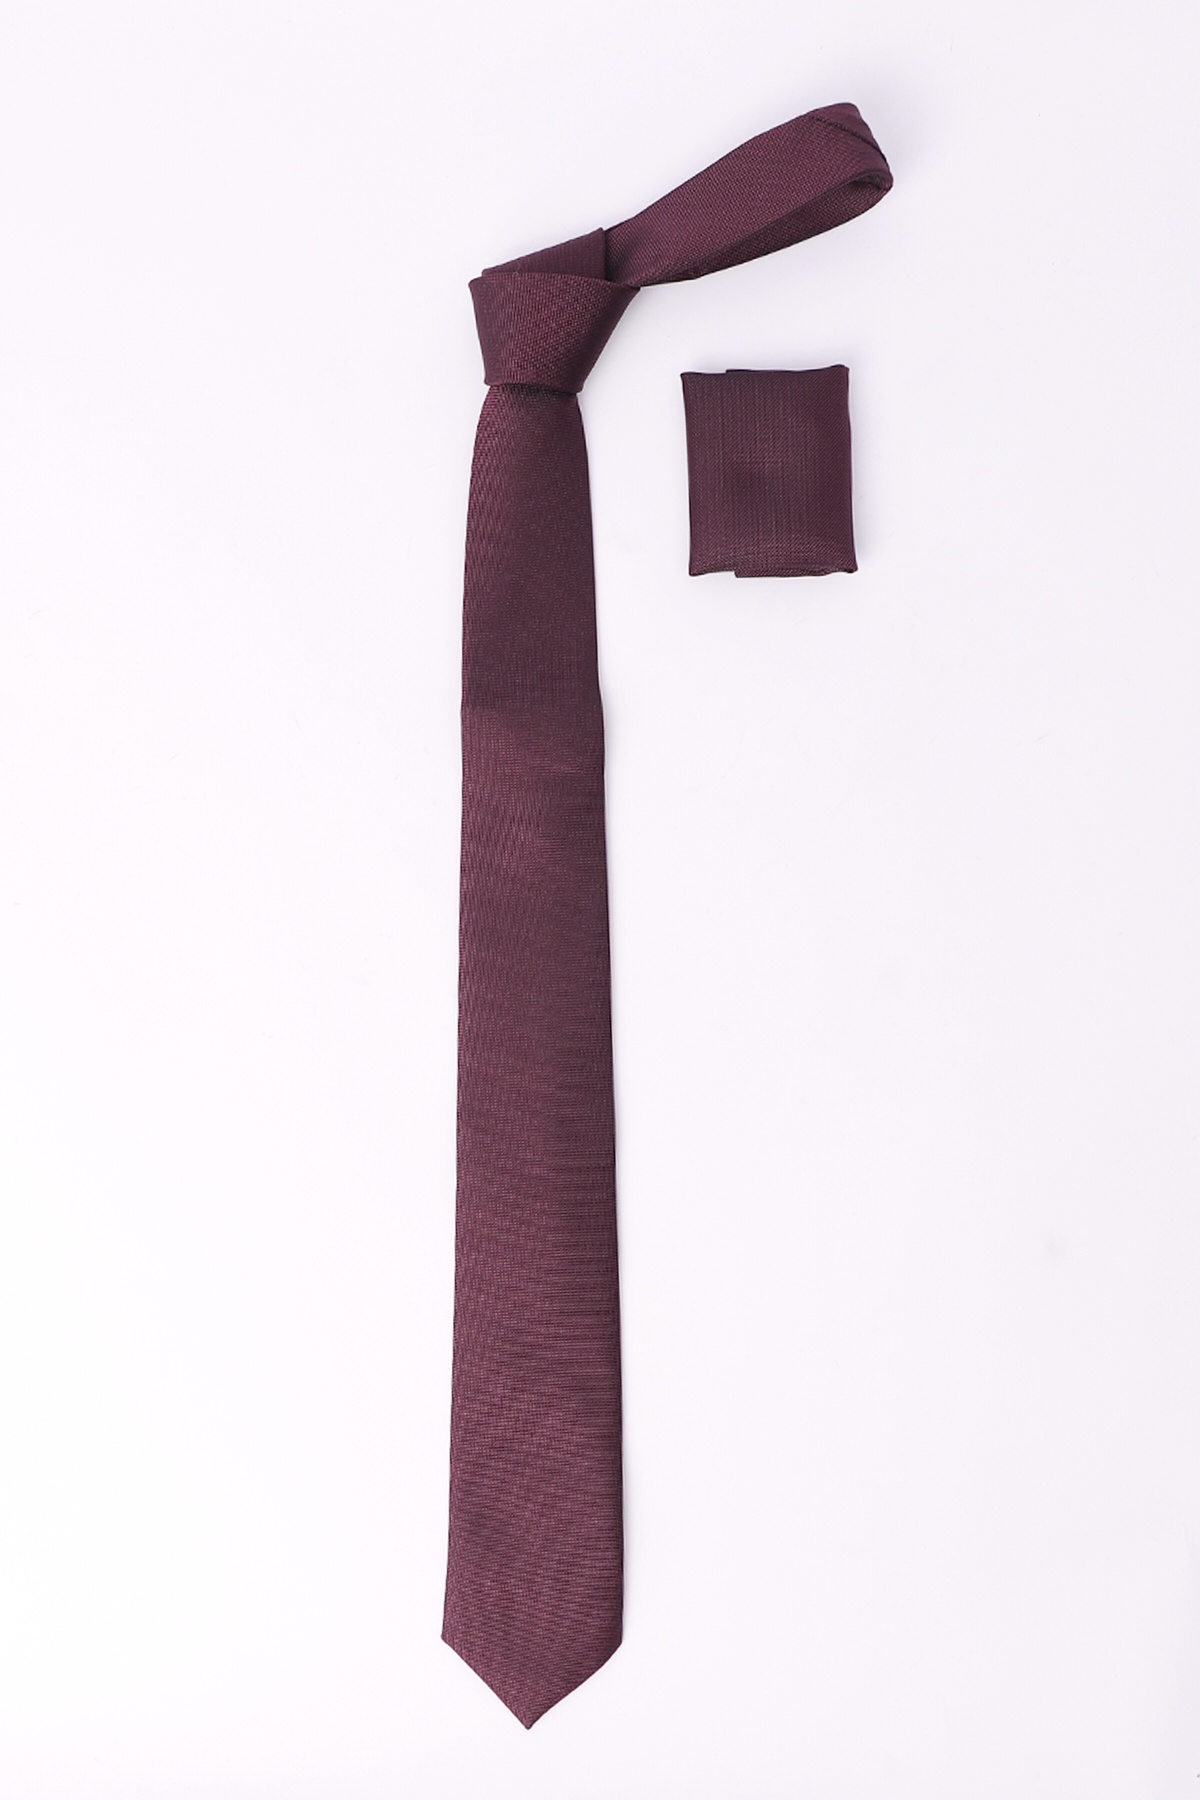  Borgogna Cravatta